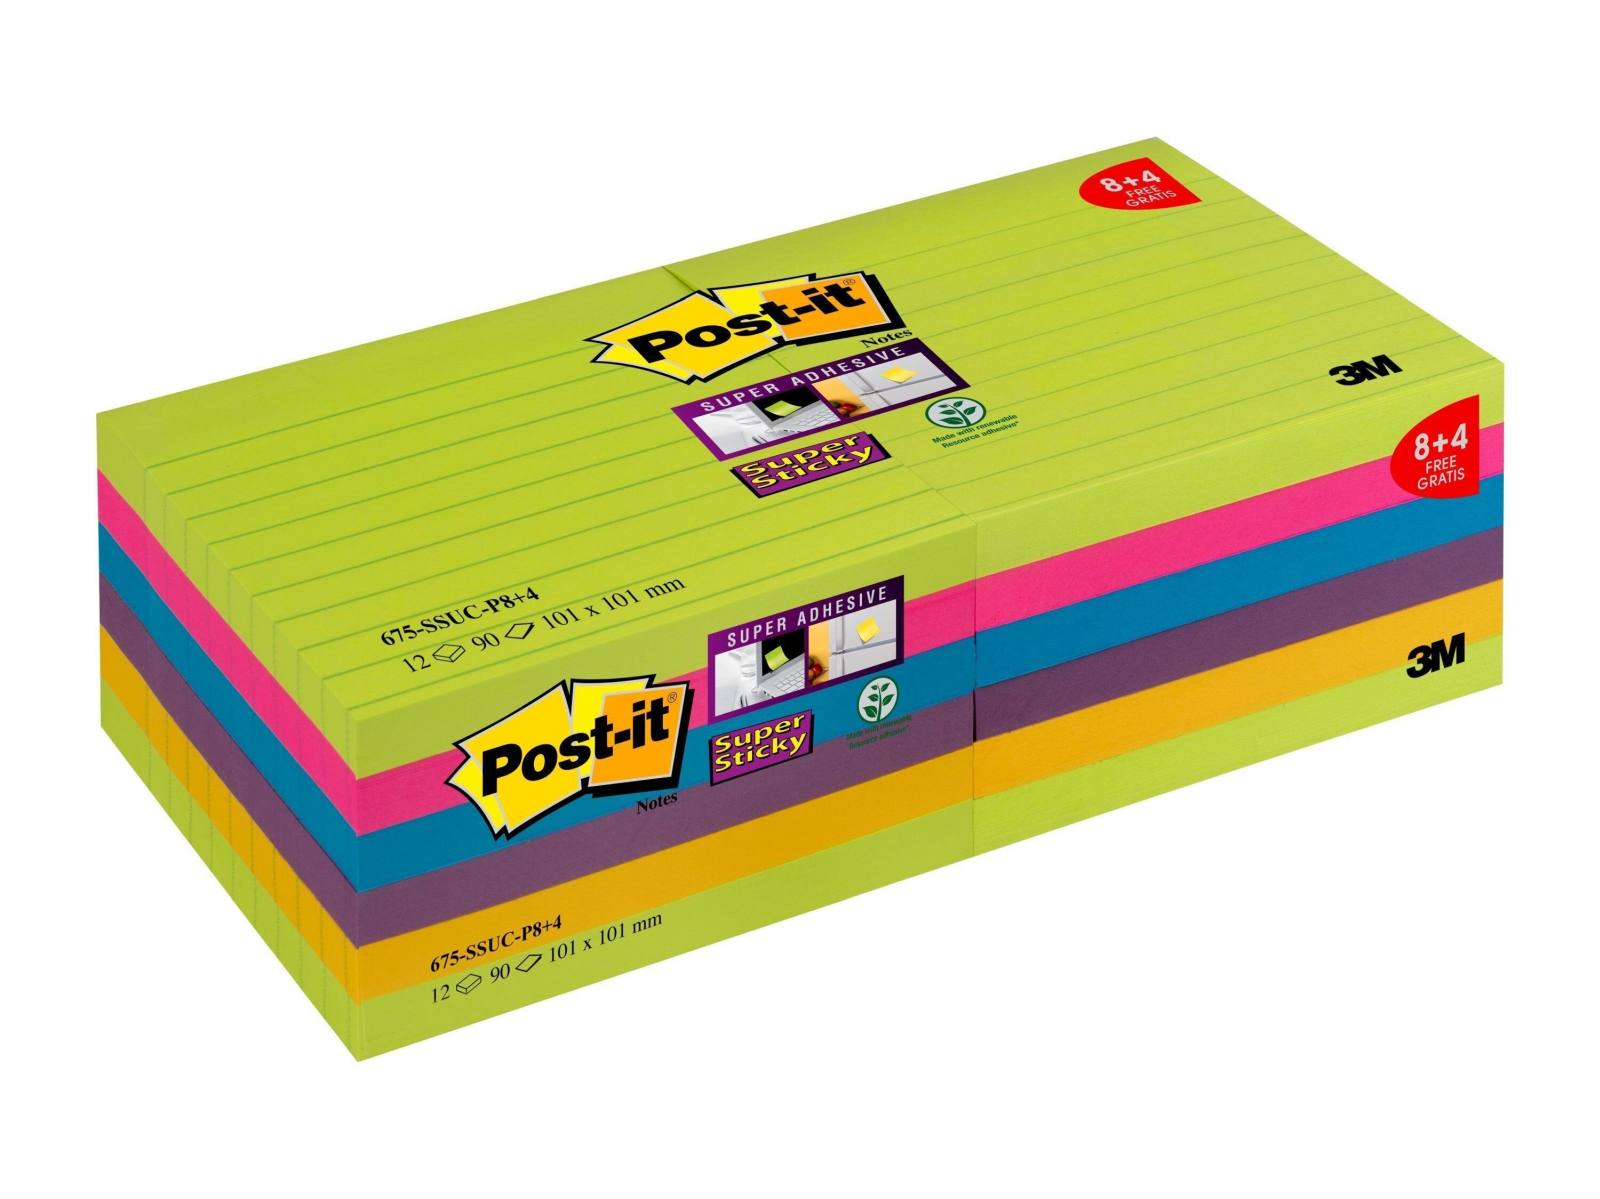 3M Post-it Super Sticky Notes Promotion 4690-SSUC-P4 2 6 kpl 90 arkkia kussakin erikoishintaan, neonvihreä, erittäin vaaleanpunainen, keltainen, sininen, neonoranssi, 101 mm x 152 mm, vuorattu, PEFC-sertifioitu.